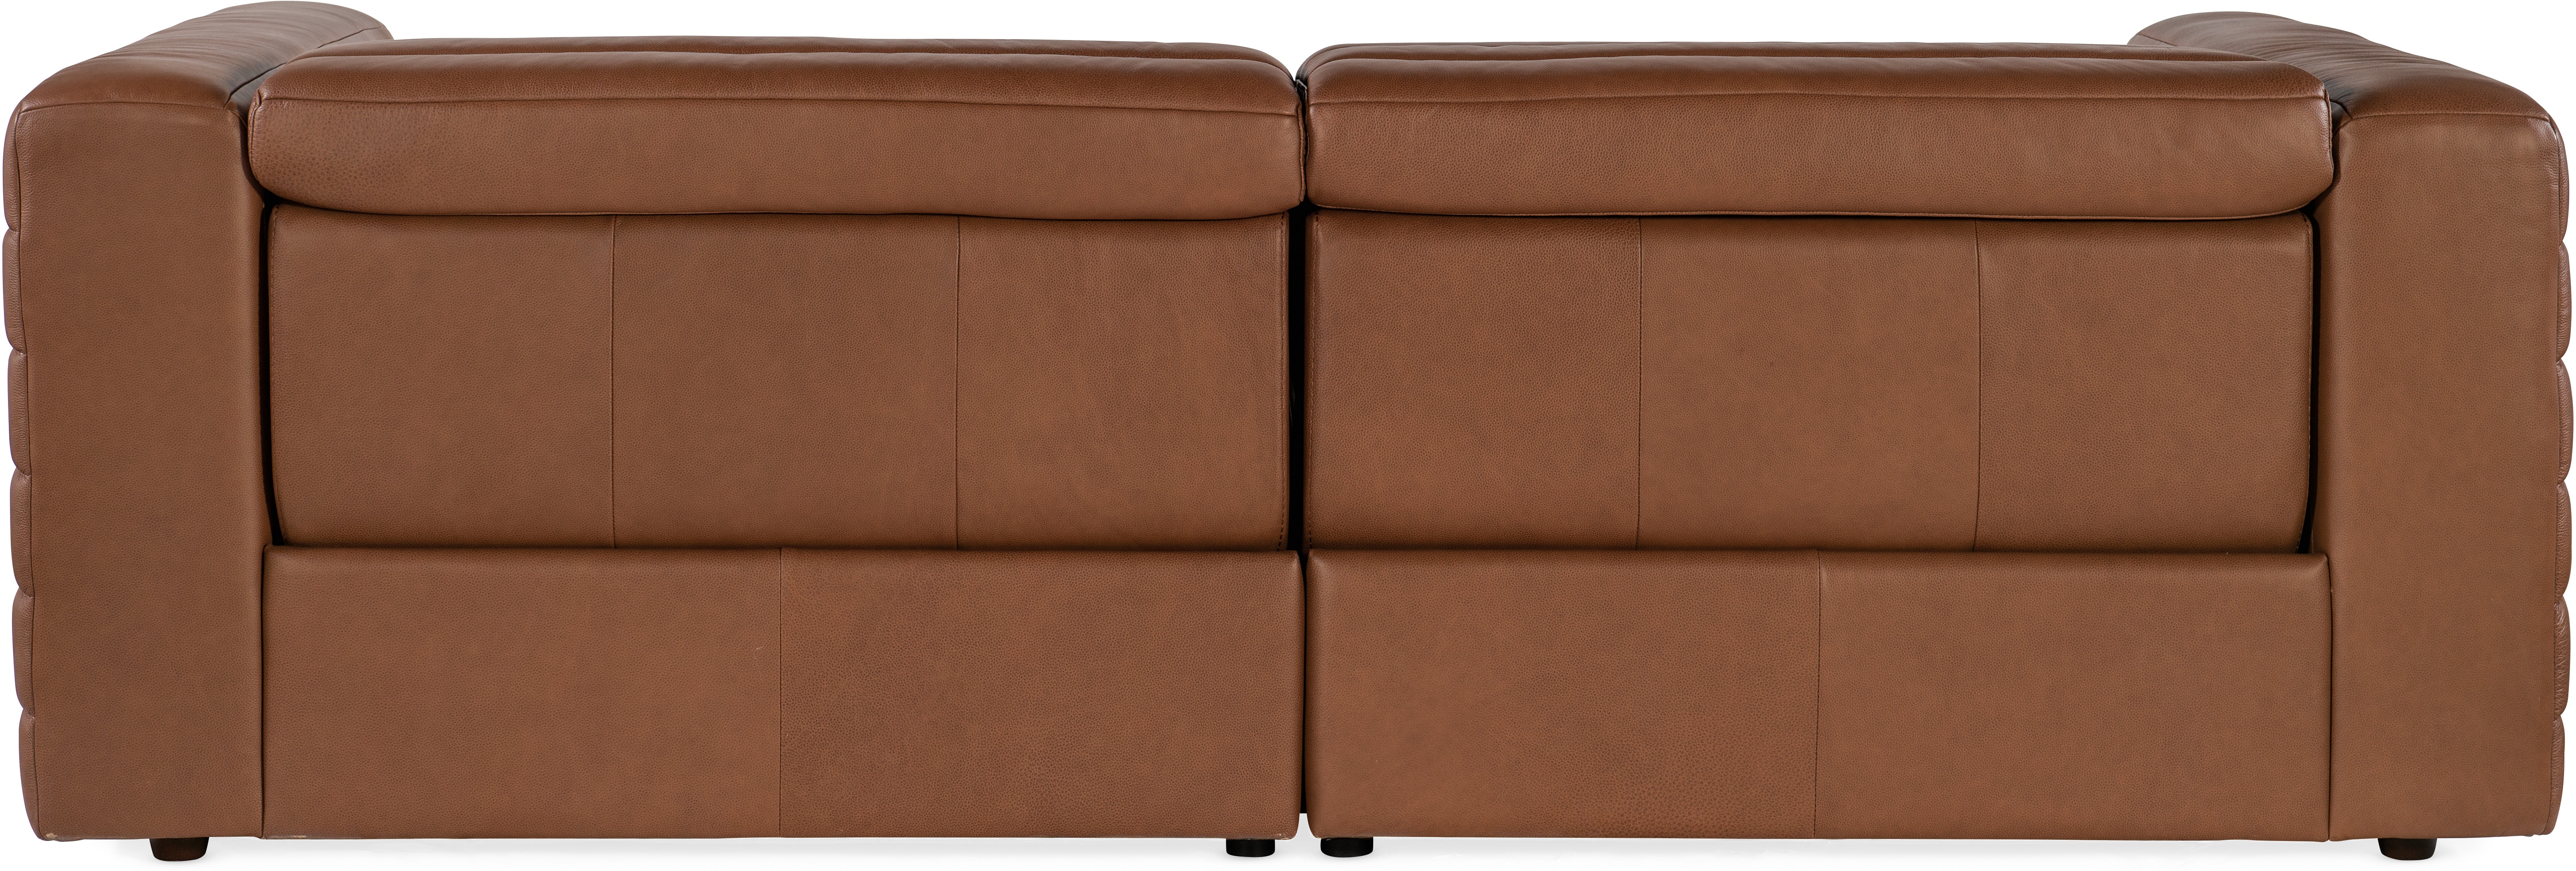 vandtæt Antarktis Luske Hooker Furniture Living Room Chatelain 1.5 LAF/RAF 2 over 2 Power Sofa with  Power Headrest